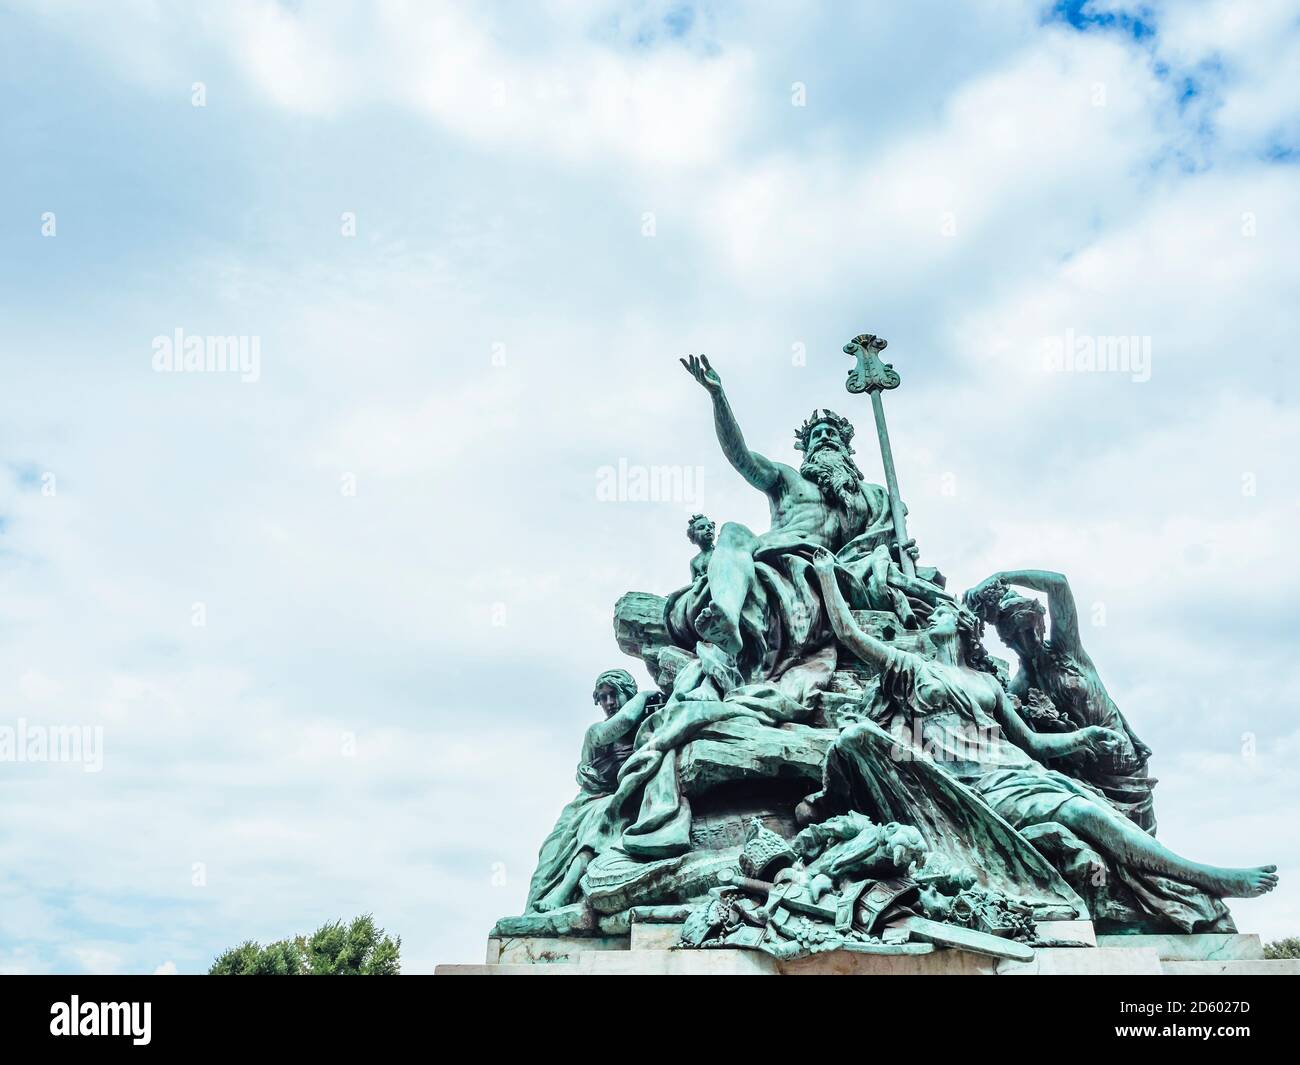 Gemrany, Duesseldorf, fountain sculpture 'Vater Rhein und seine Toechter' Stock Photo